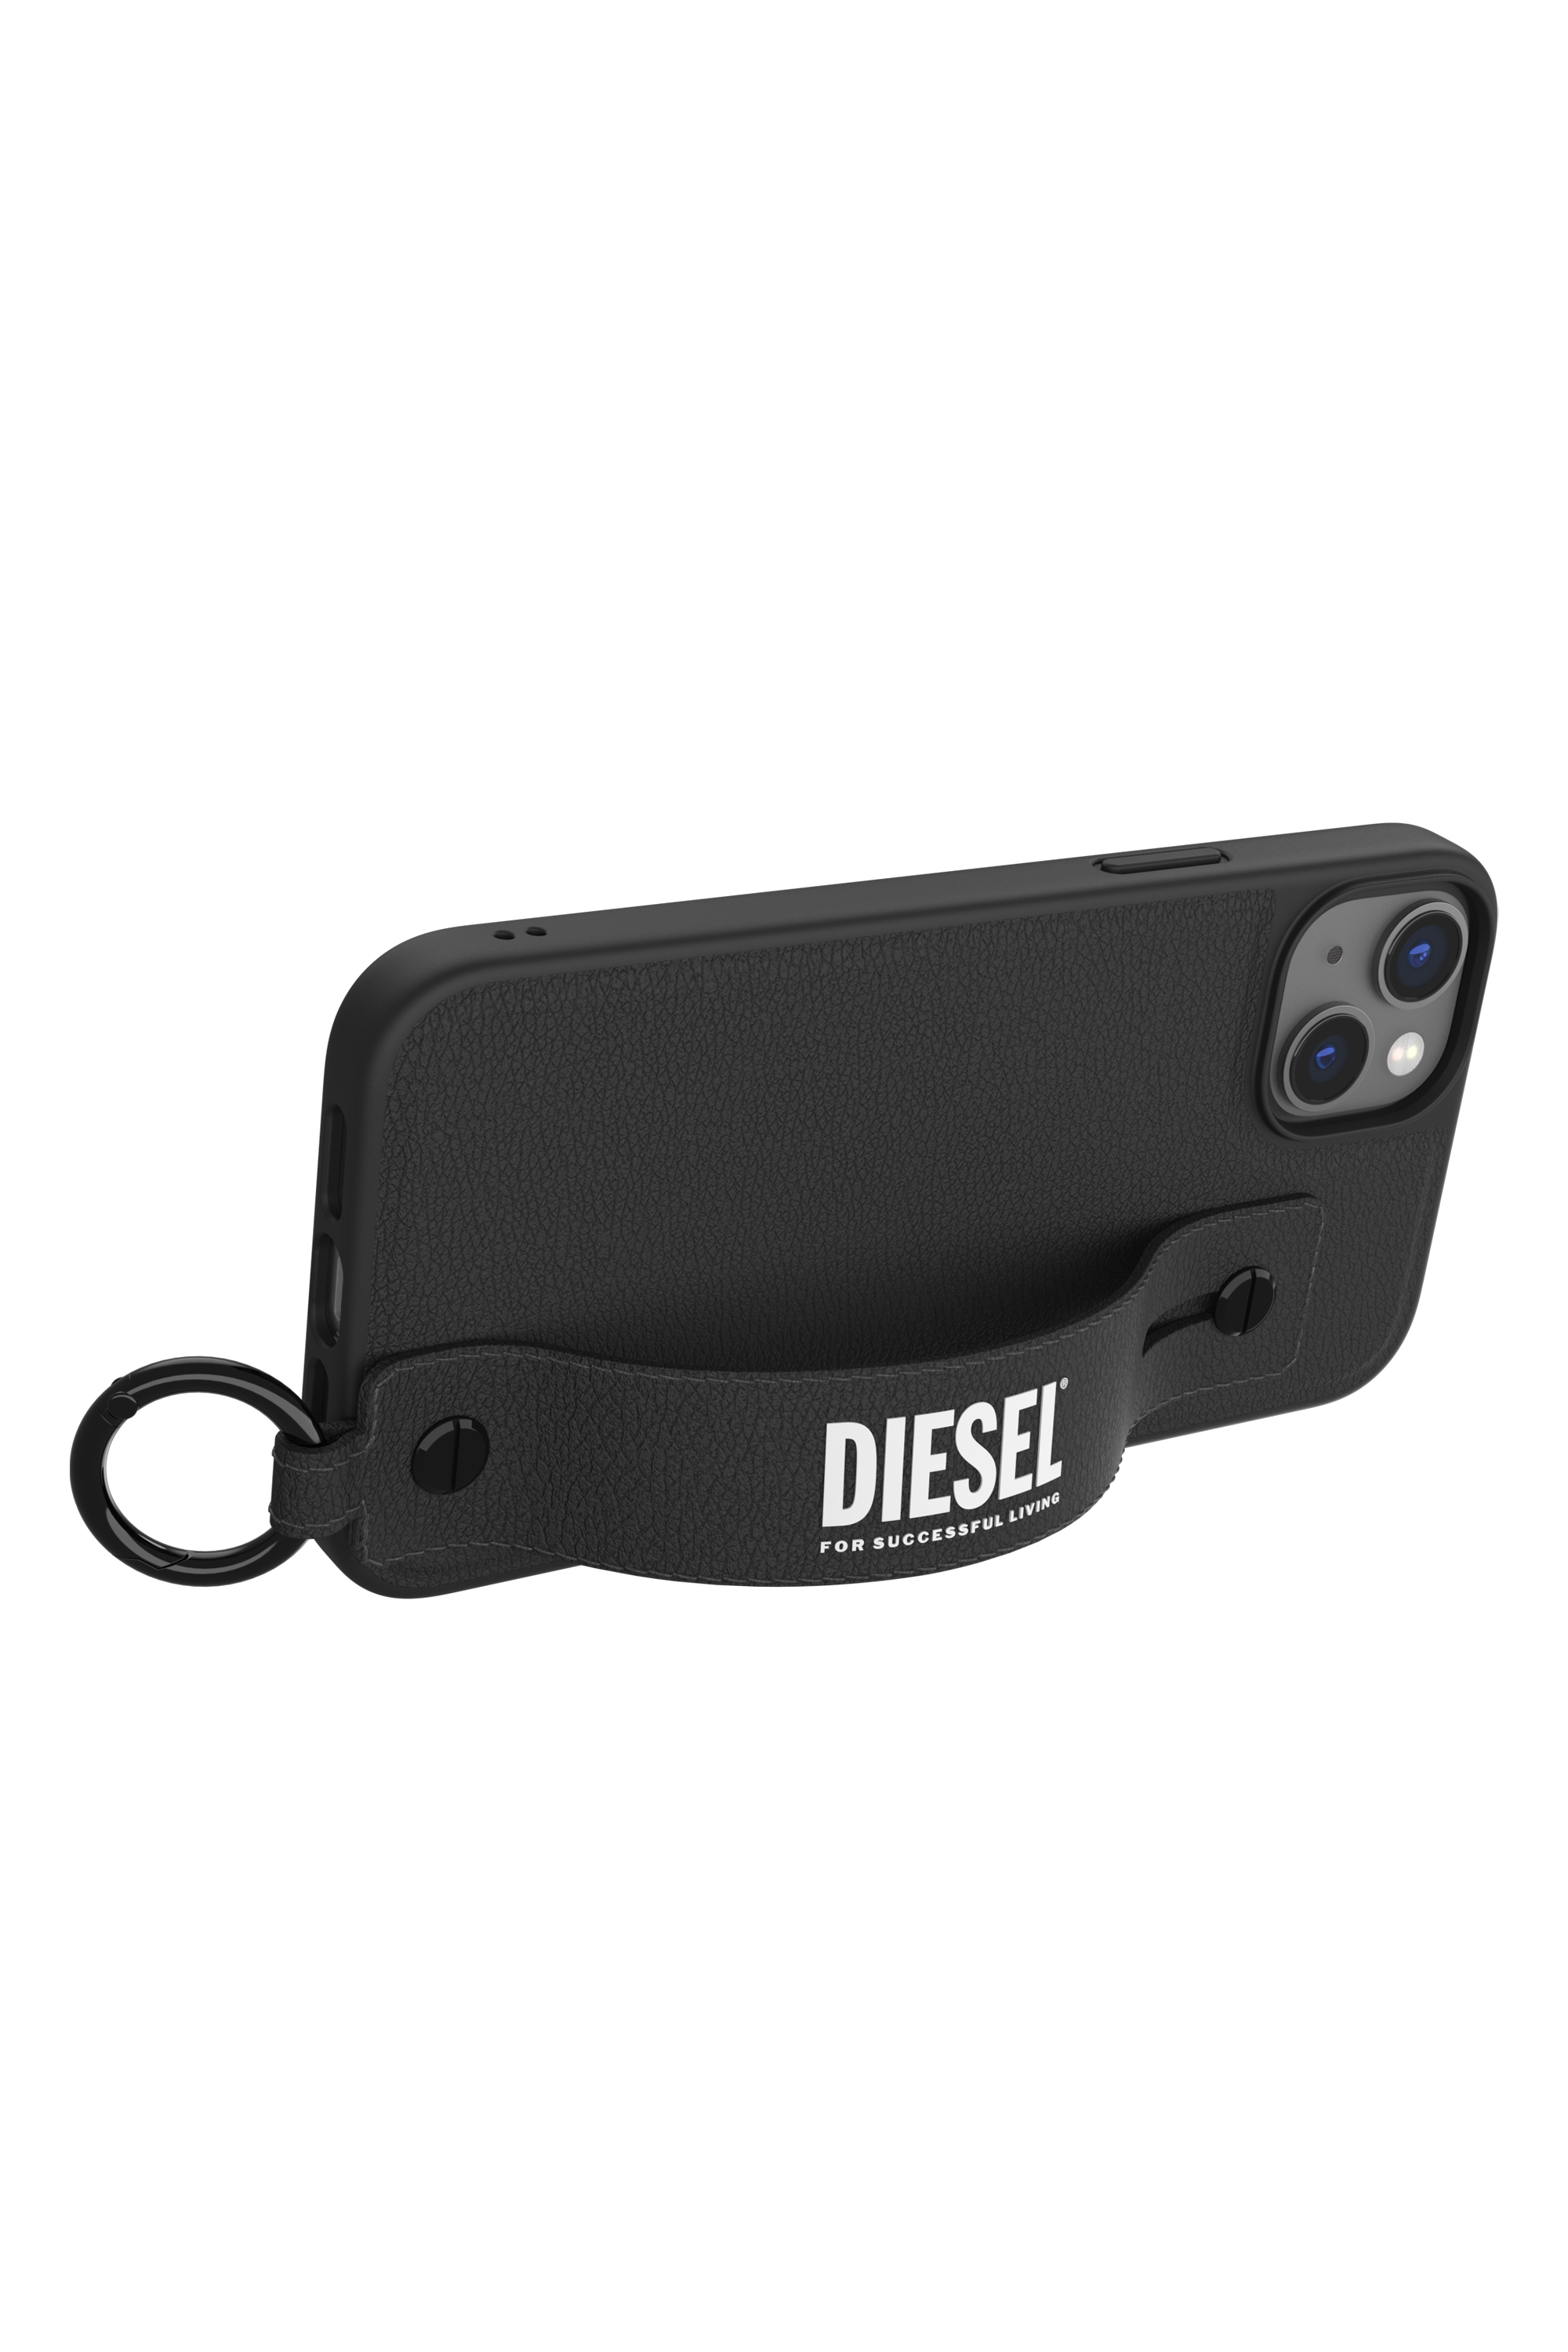 Diesel - 50285 MOULDED CASE, Black - Image 5